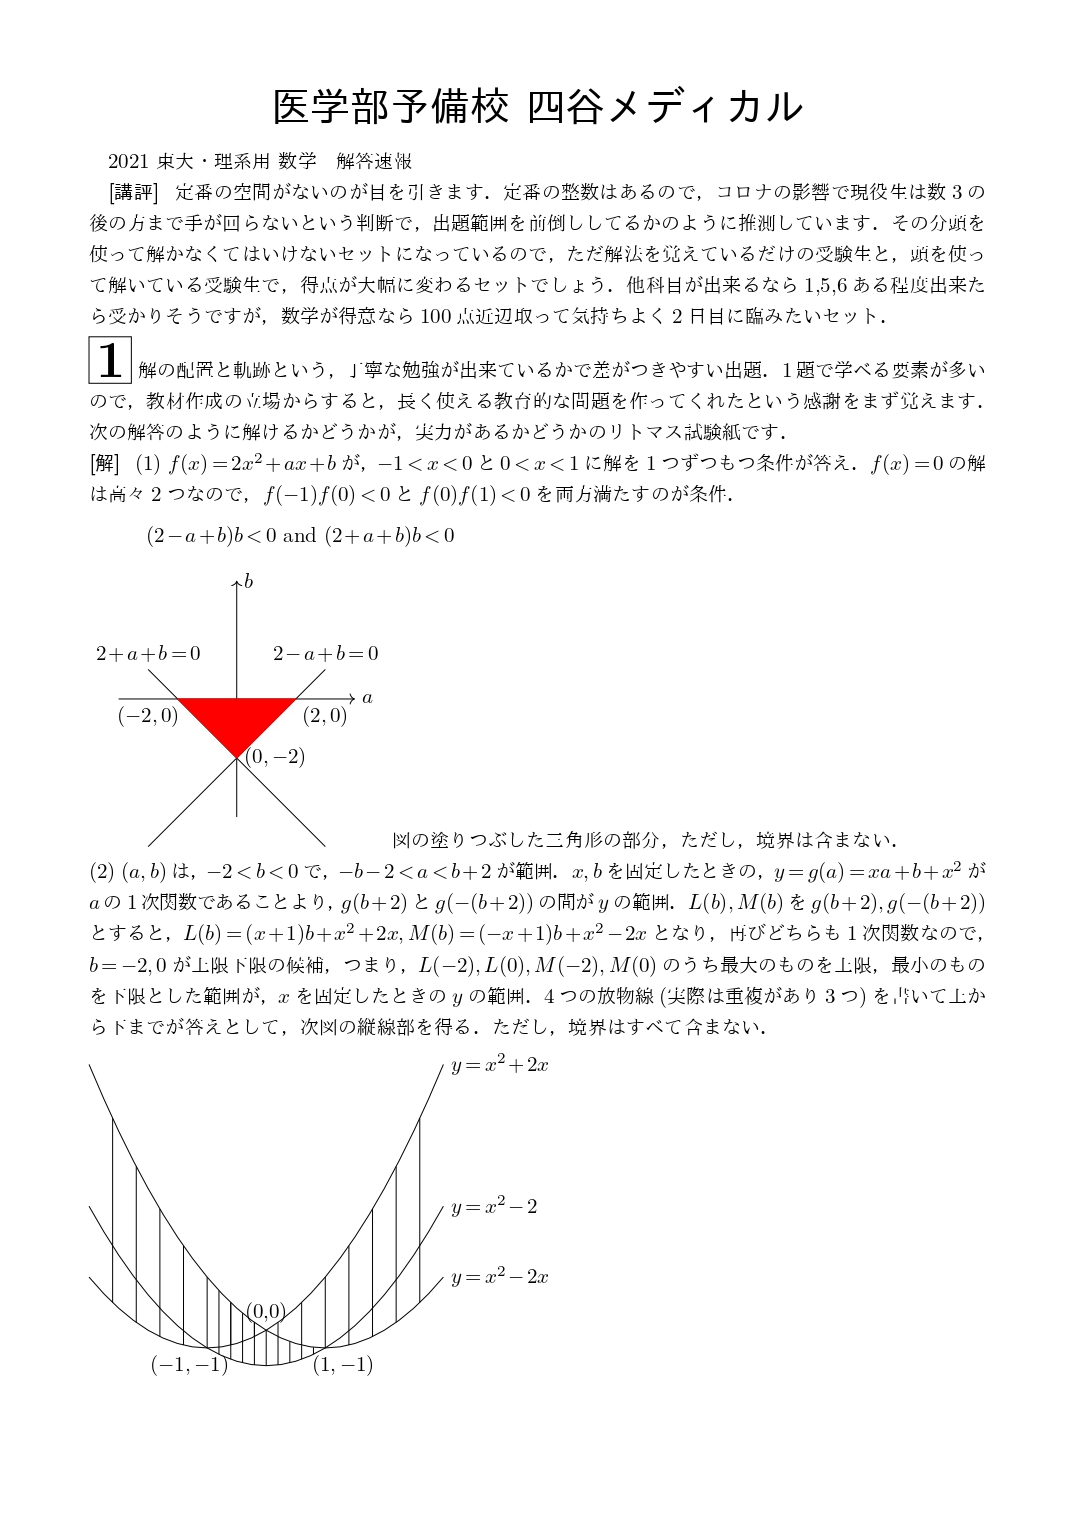 2021年2月25日 東京大学(理系)数学 解答速報